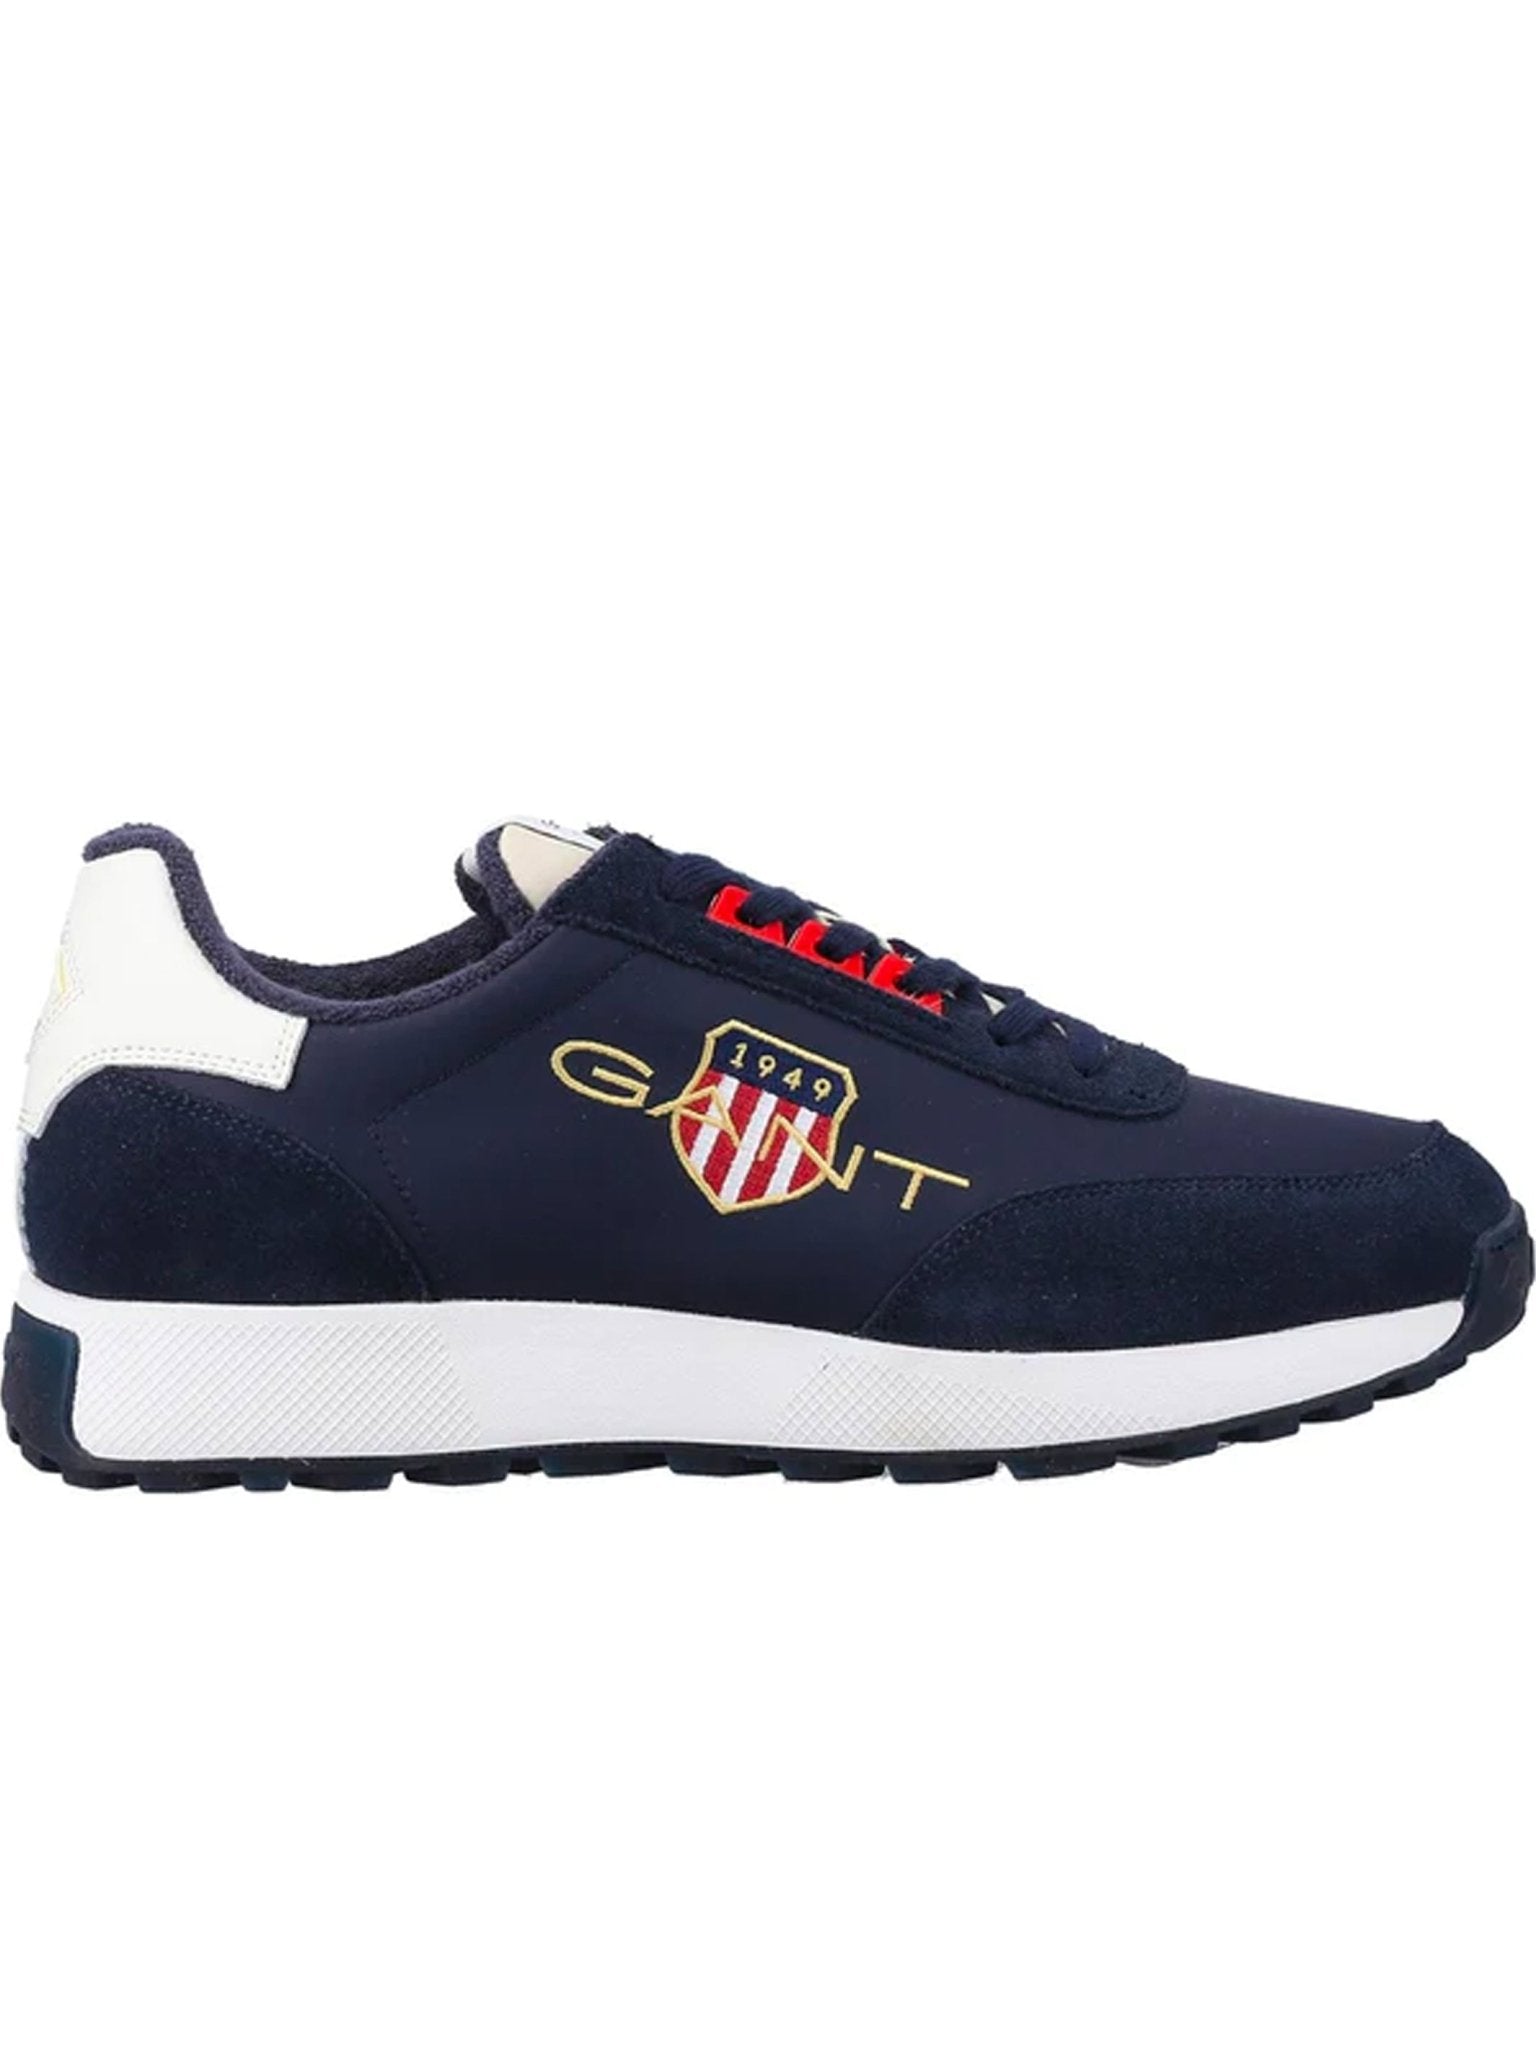 GANT GANT - Garold Mens trainer / Gant sneaker - Gant Shield Logo Shoes